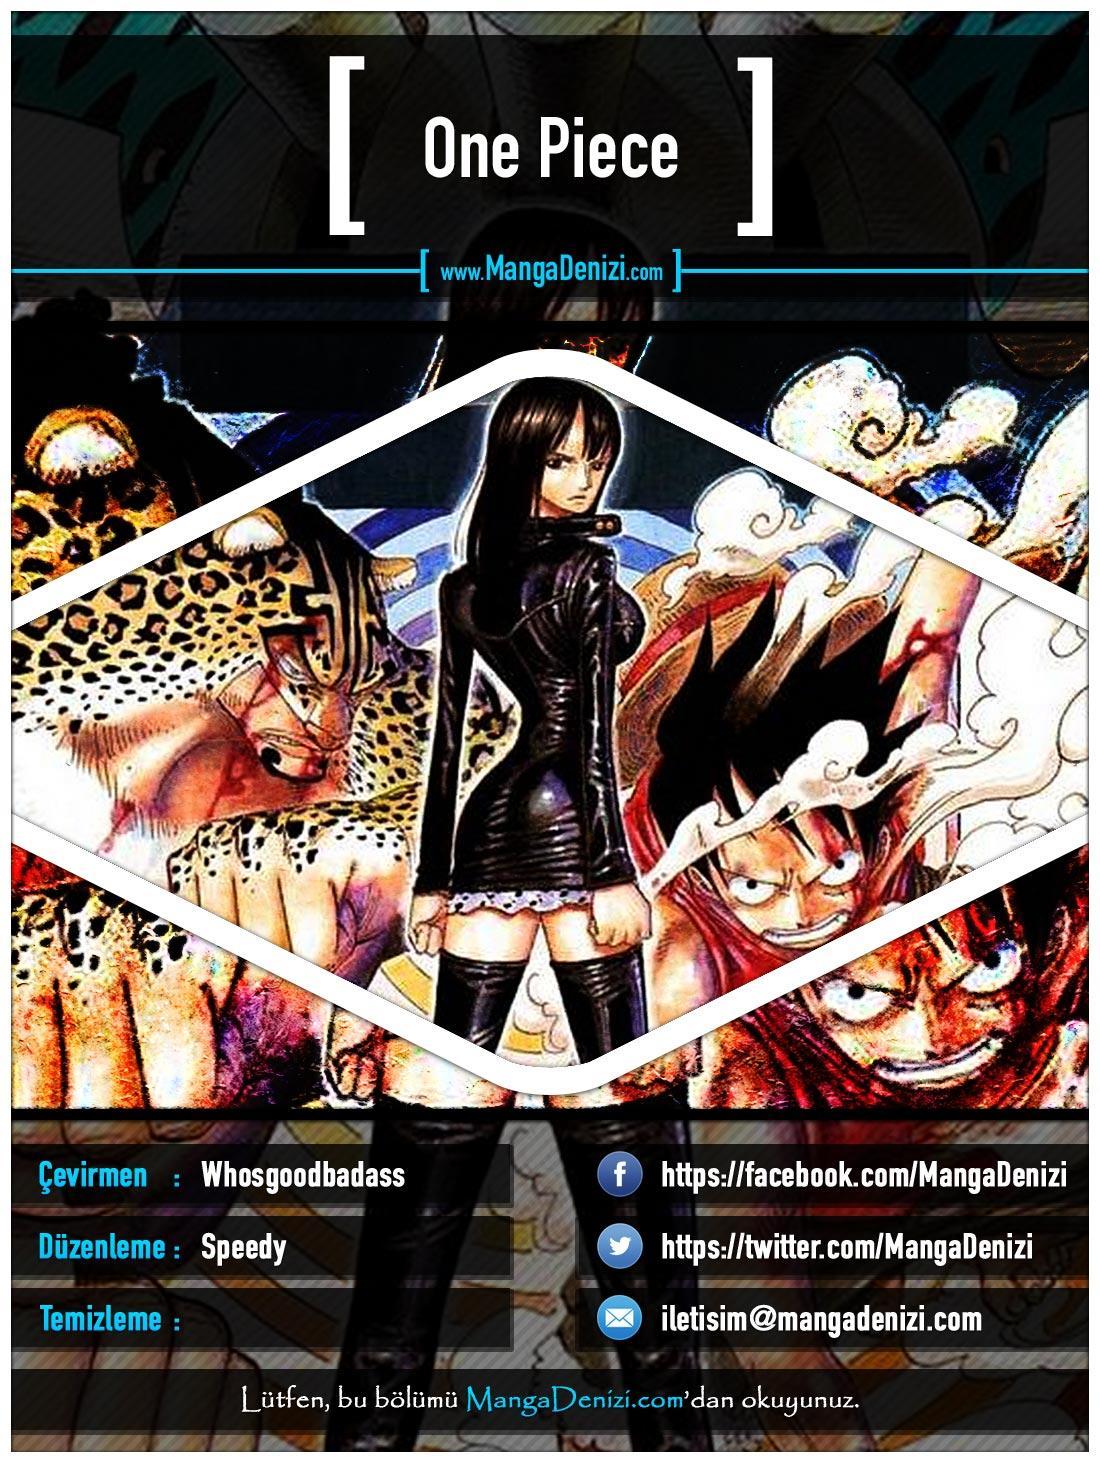 One Piece [Renkli] mangasının 0412 bölümünün 1. sayfasını okuyorsunuz.